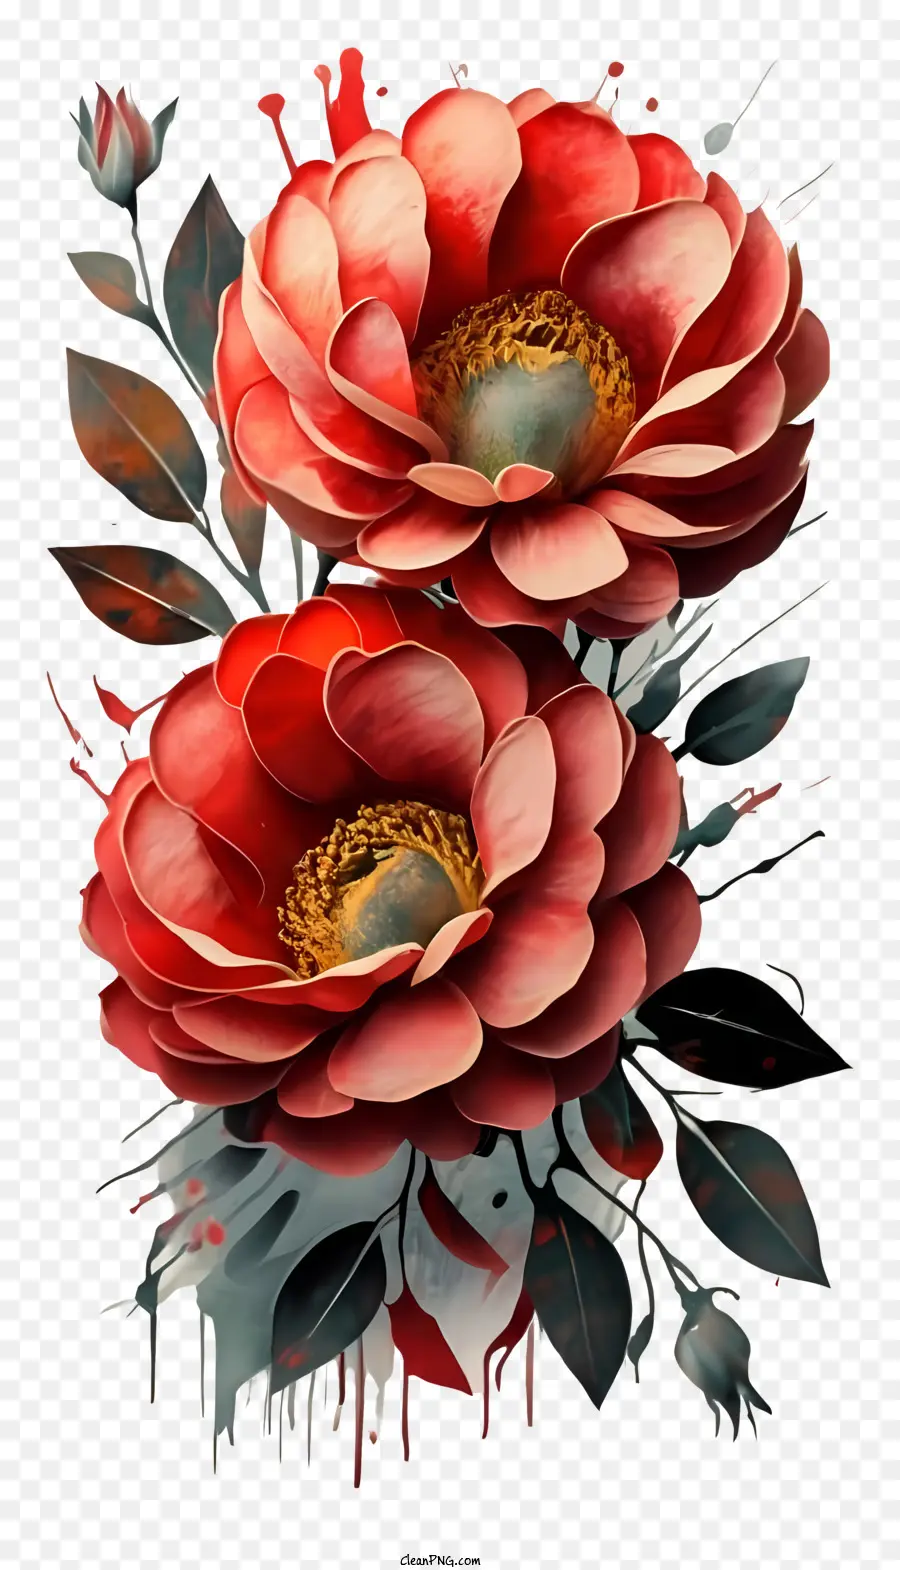 Bức tranh kỹ thuật số Hoa đỏ những giọt sơn đen nền màu đen hoặc nồi - Bức tranh kỹ thuật số của hoa đỏ với sơn đen